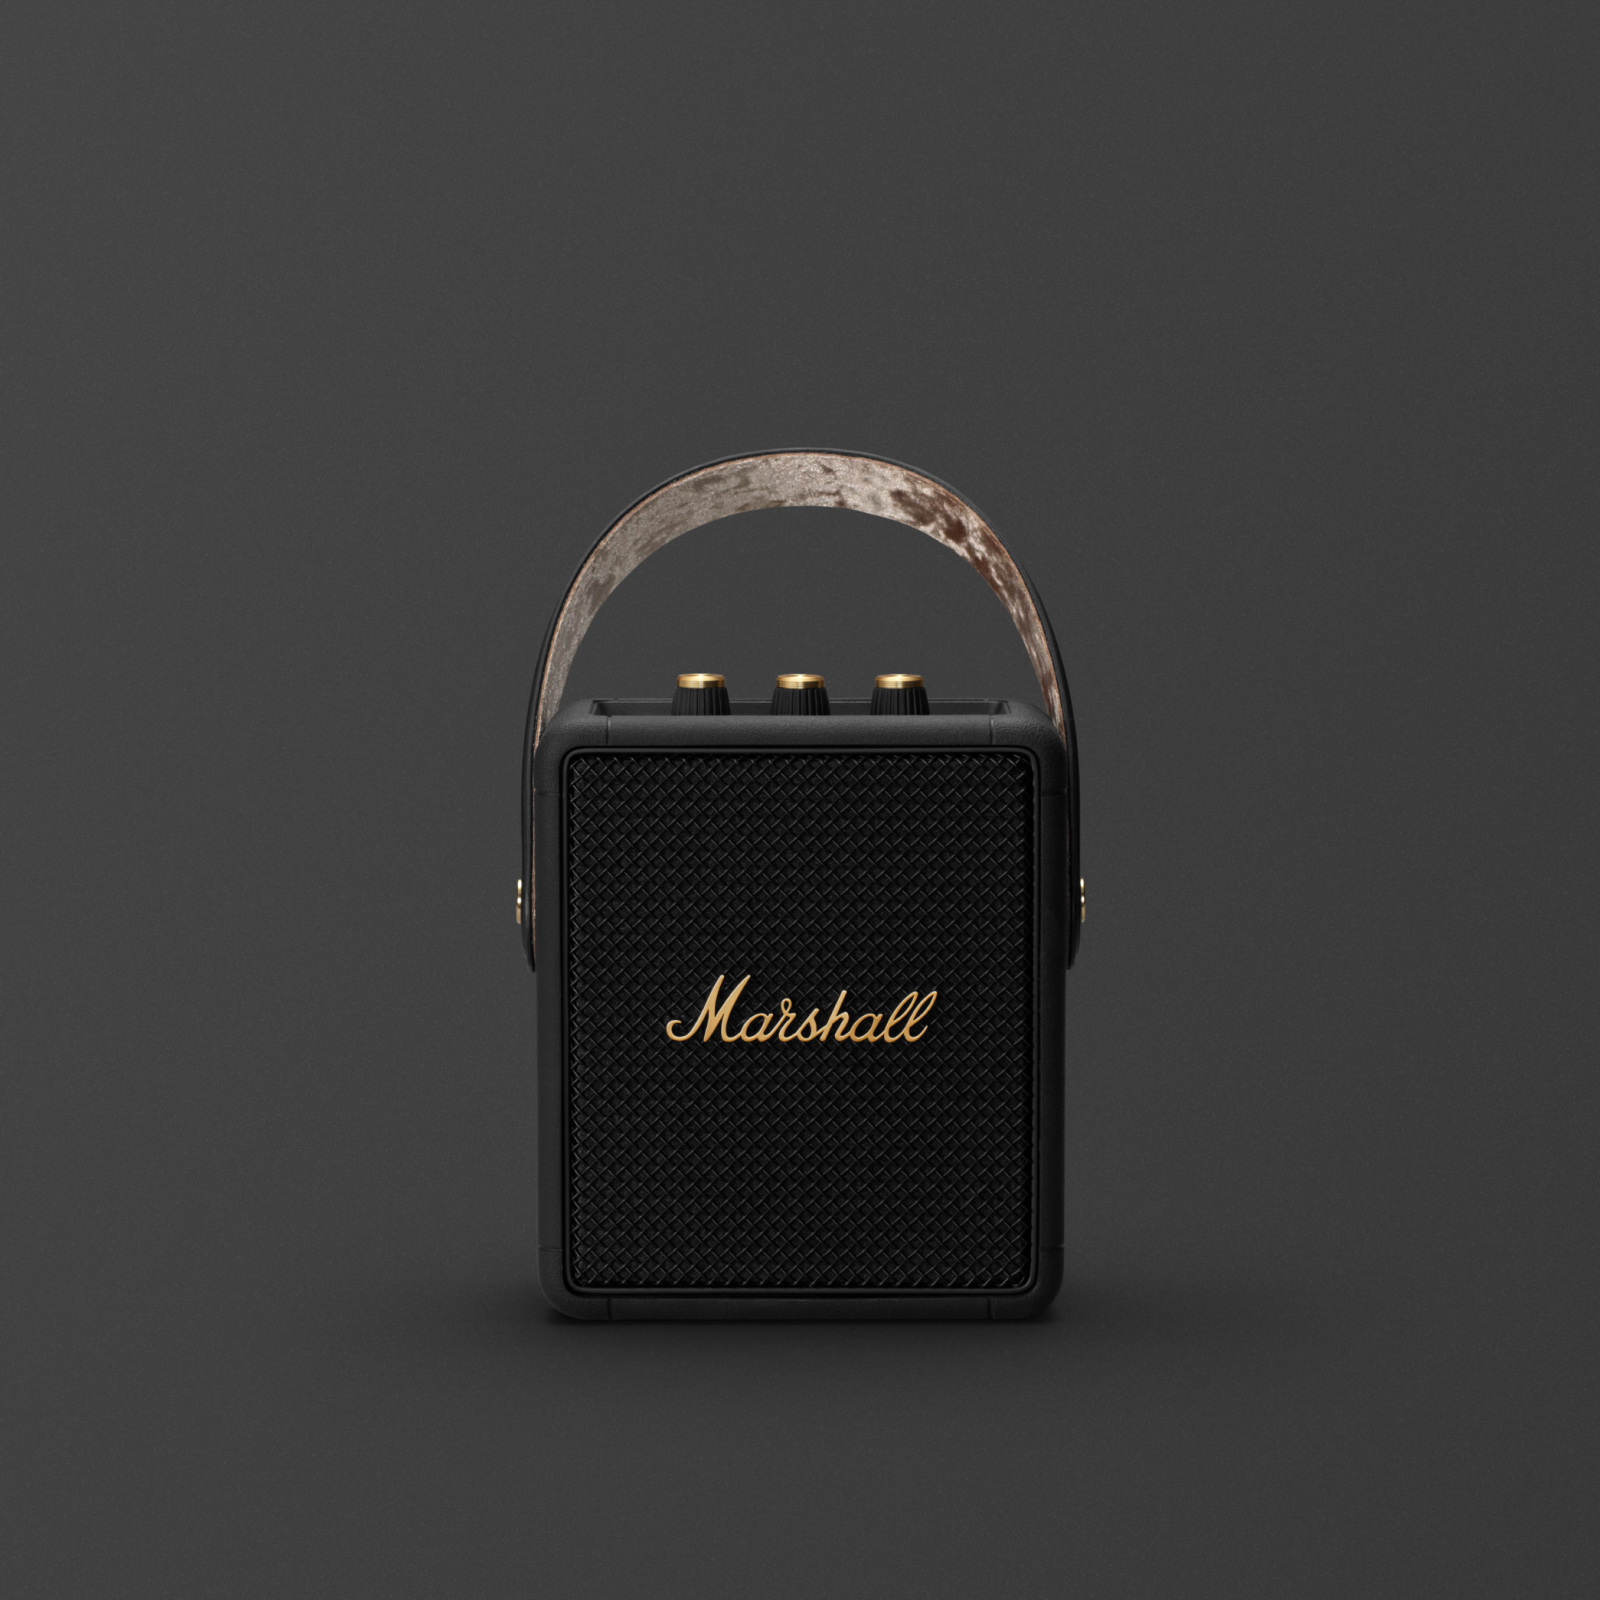 Marshall speakers on sale | Marshall.com